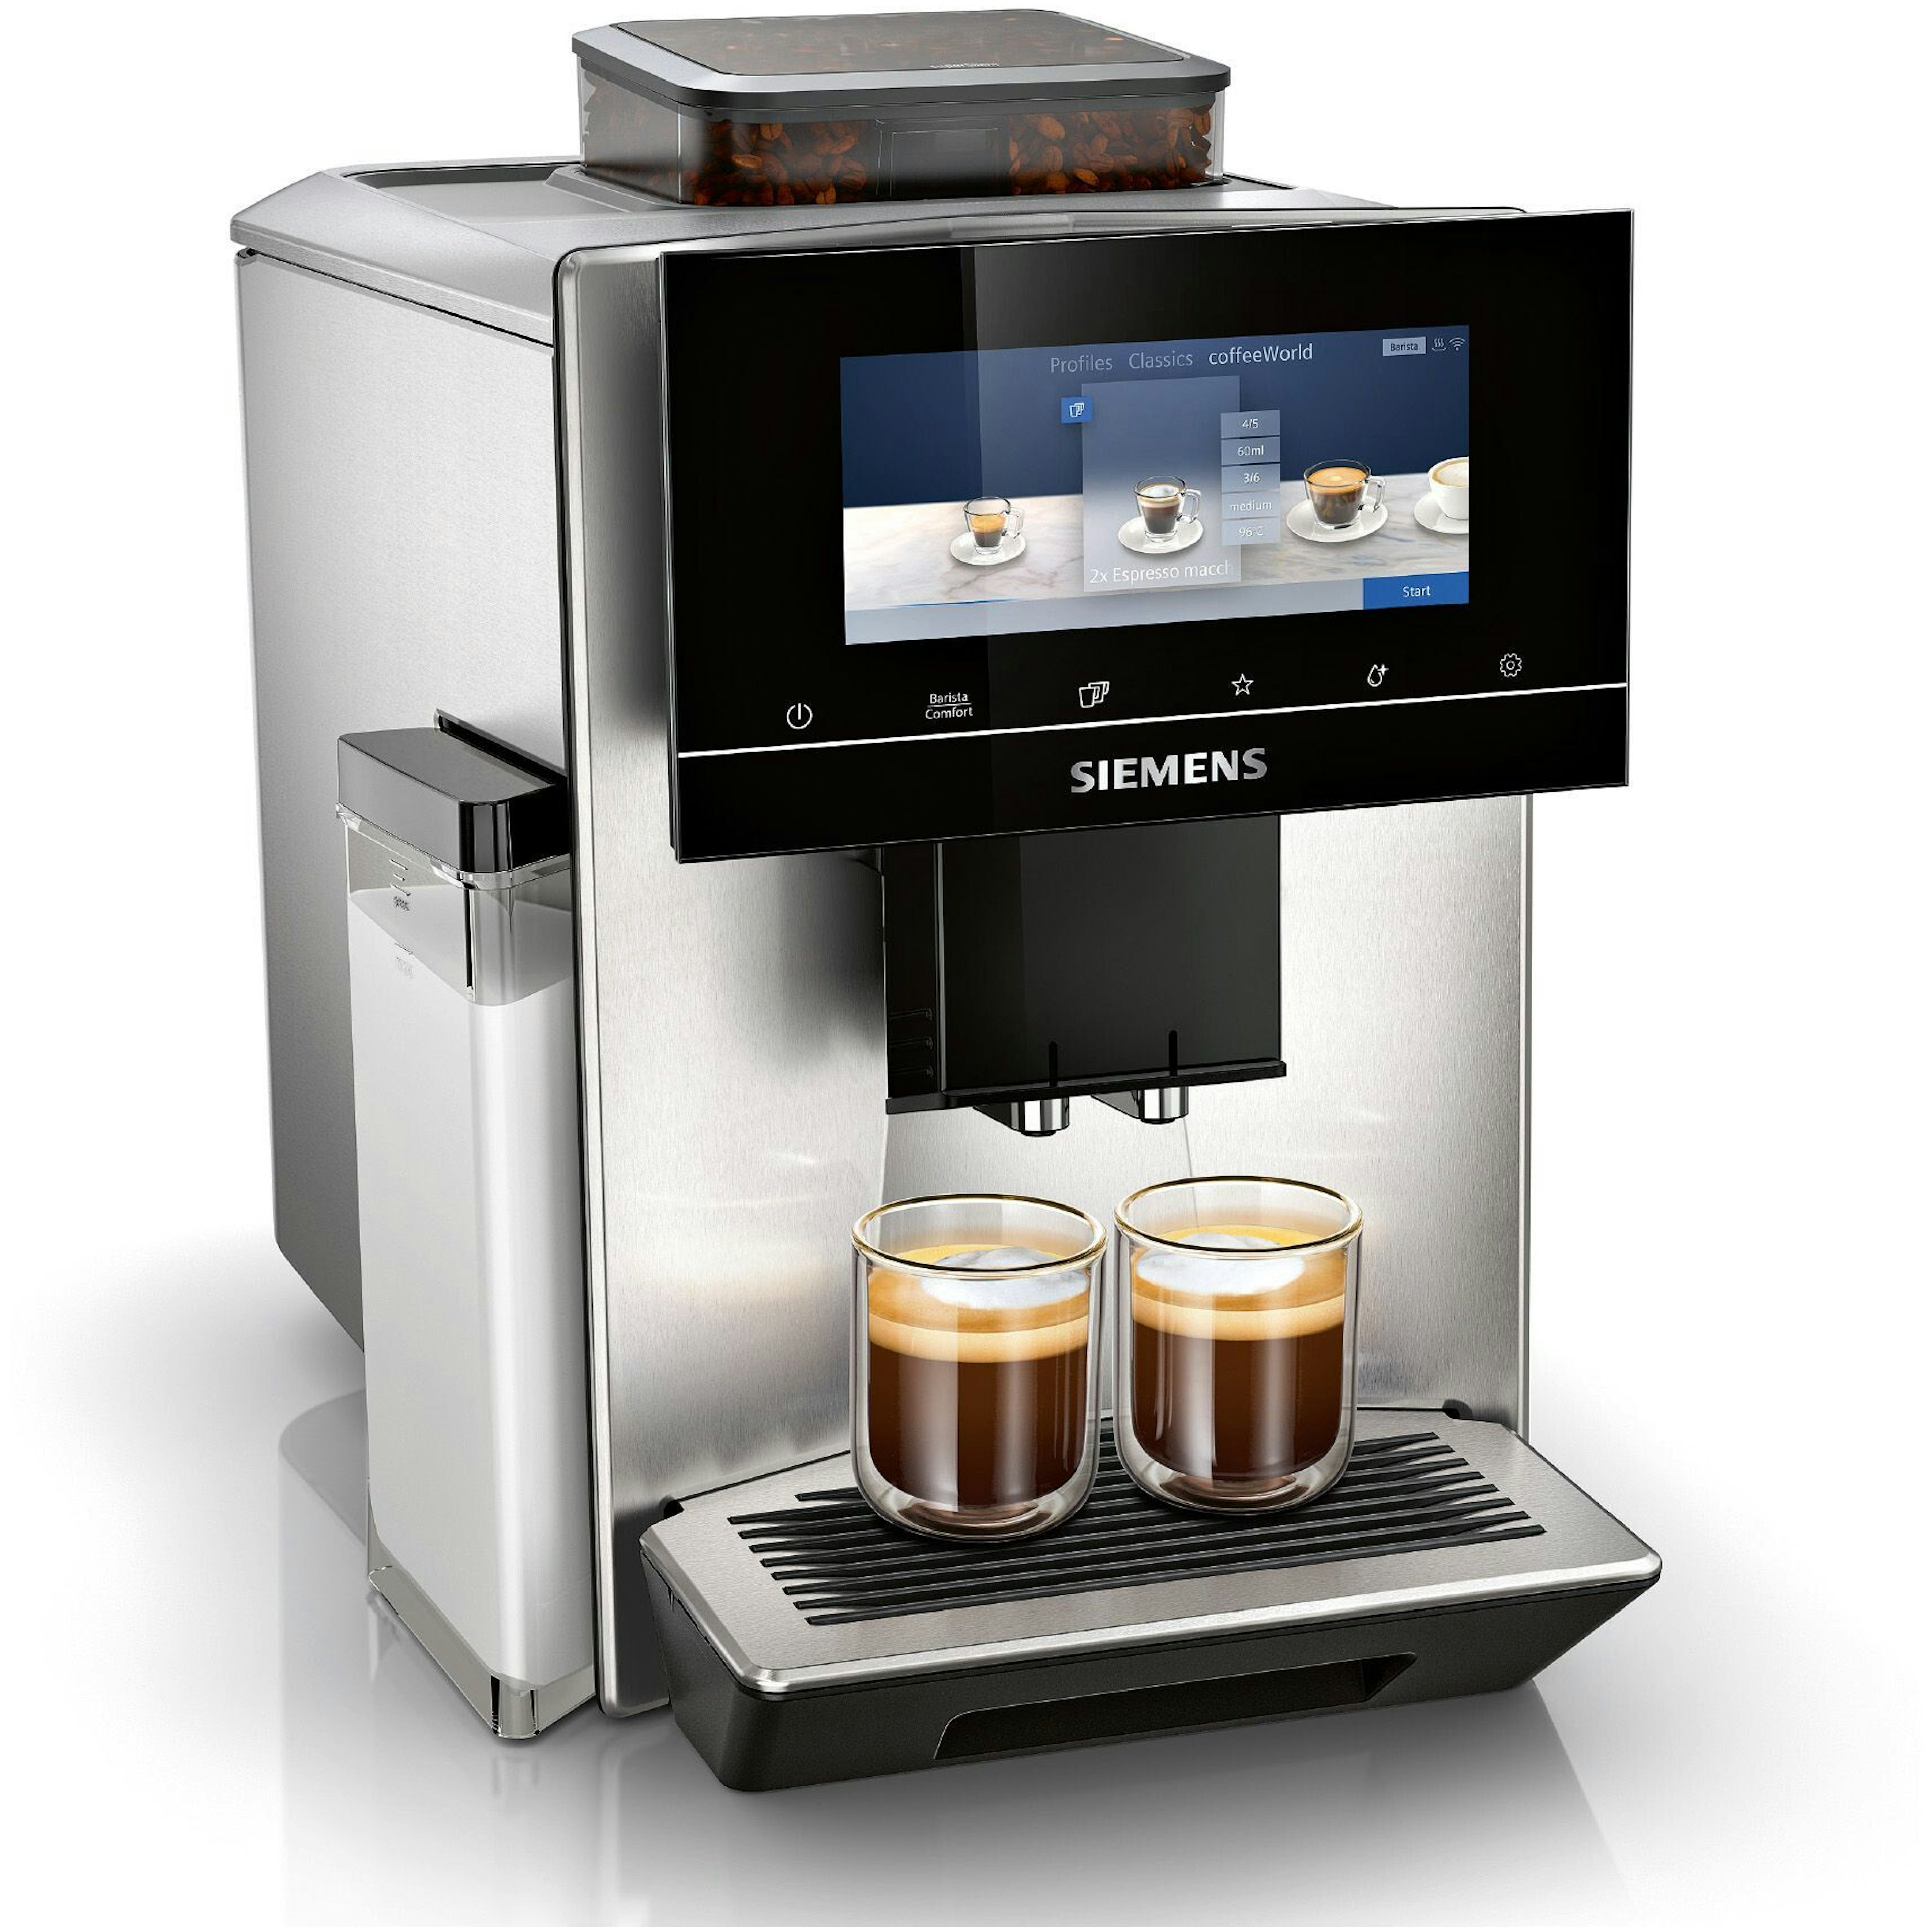 Siemens TQ903R03 koffiemachine afbeelding 1